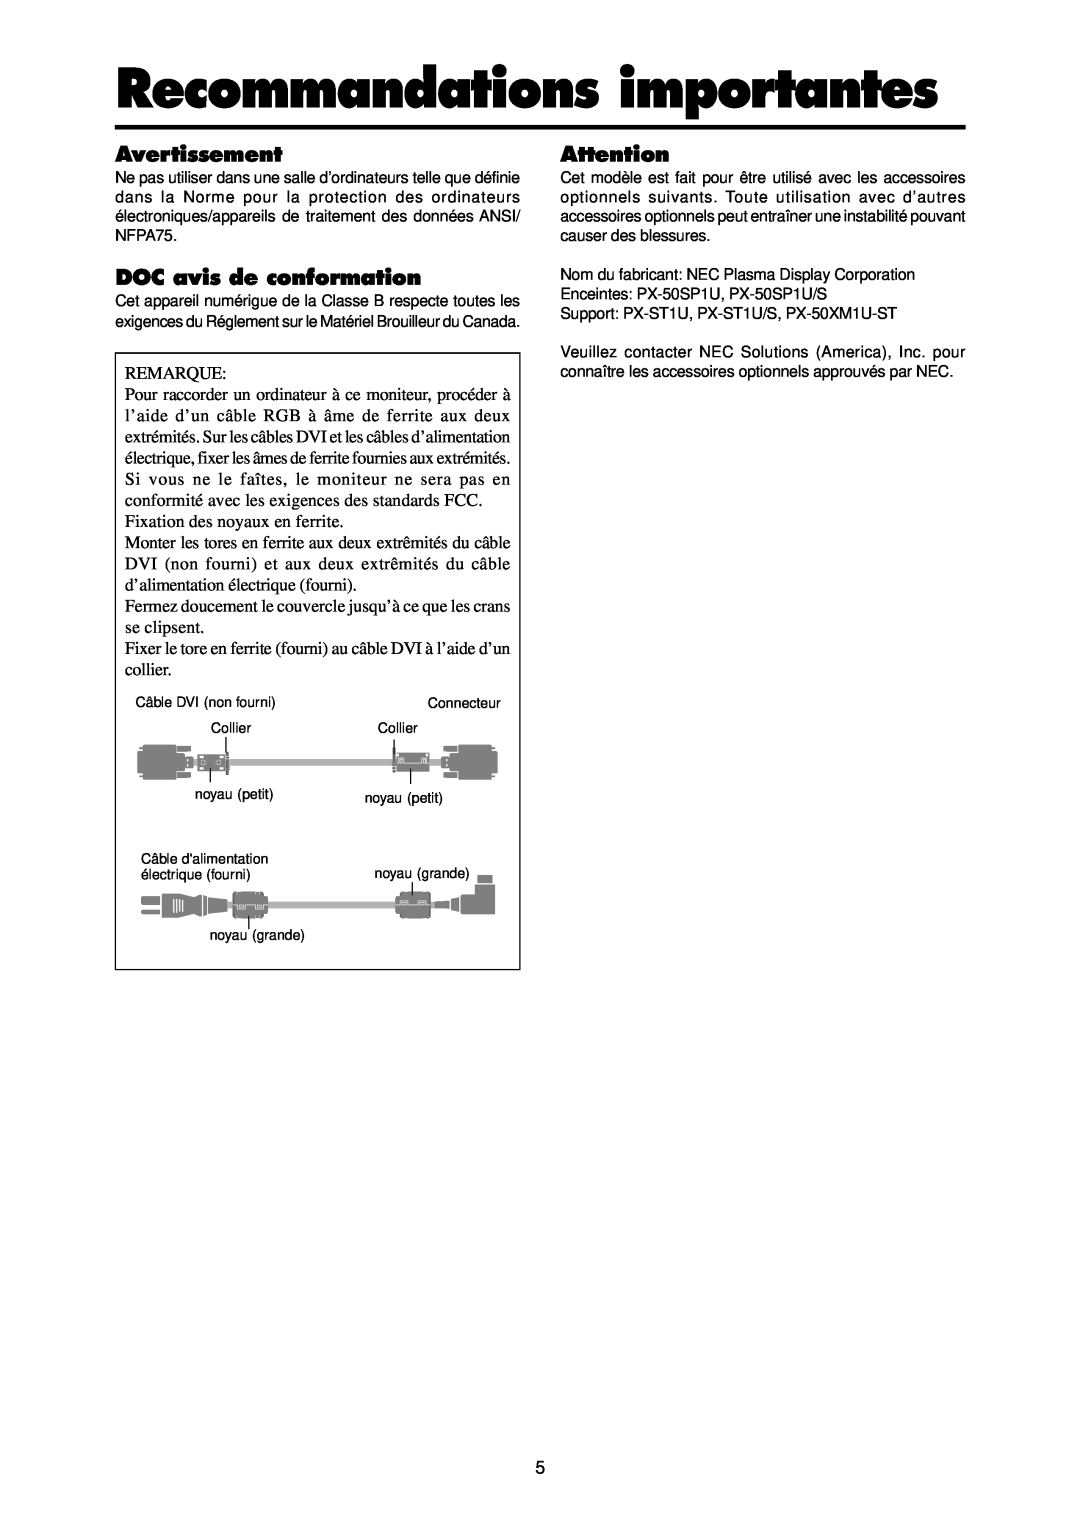 NEC PX-50XR4A operation manual Recommandations importantes, Avertissement, DOC avis de conformation, Remarque 